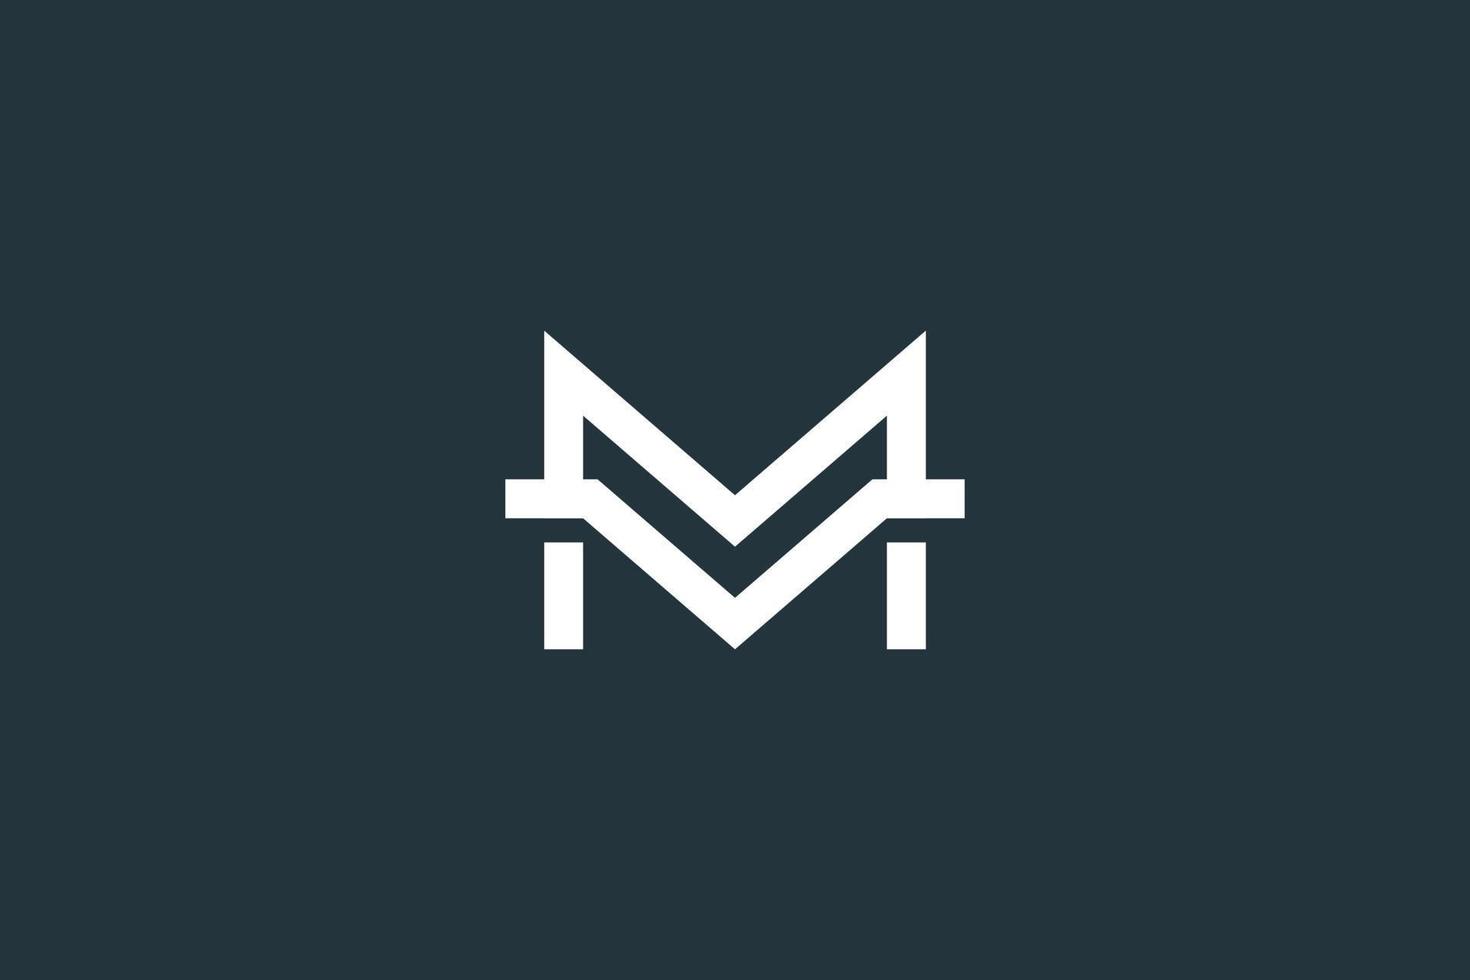 Minimal Letter VM, MV or M Logo Design Vector Template